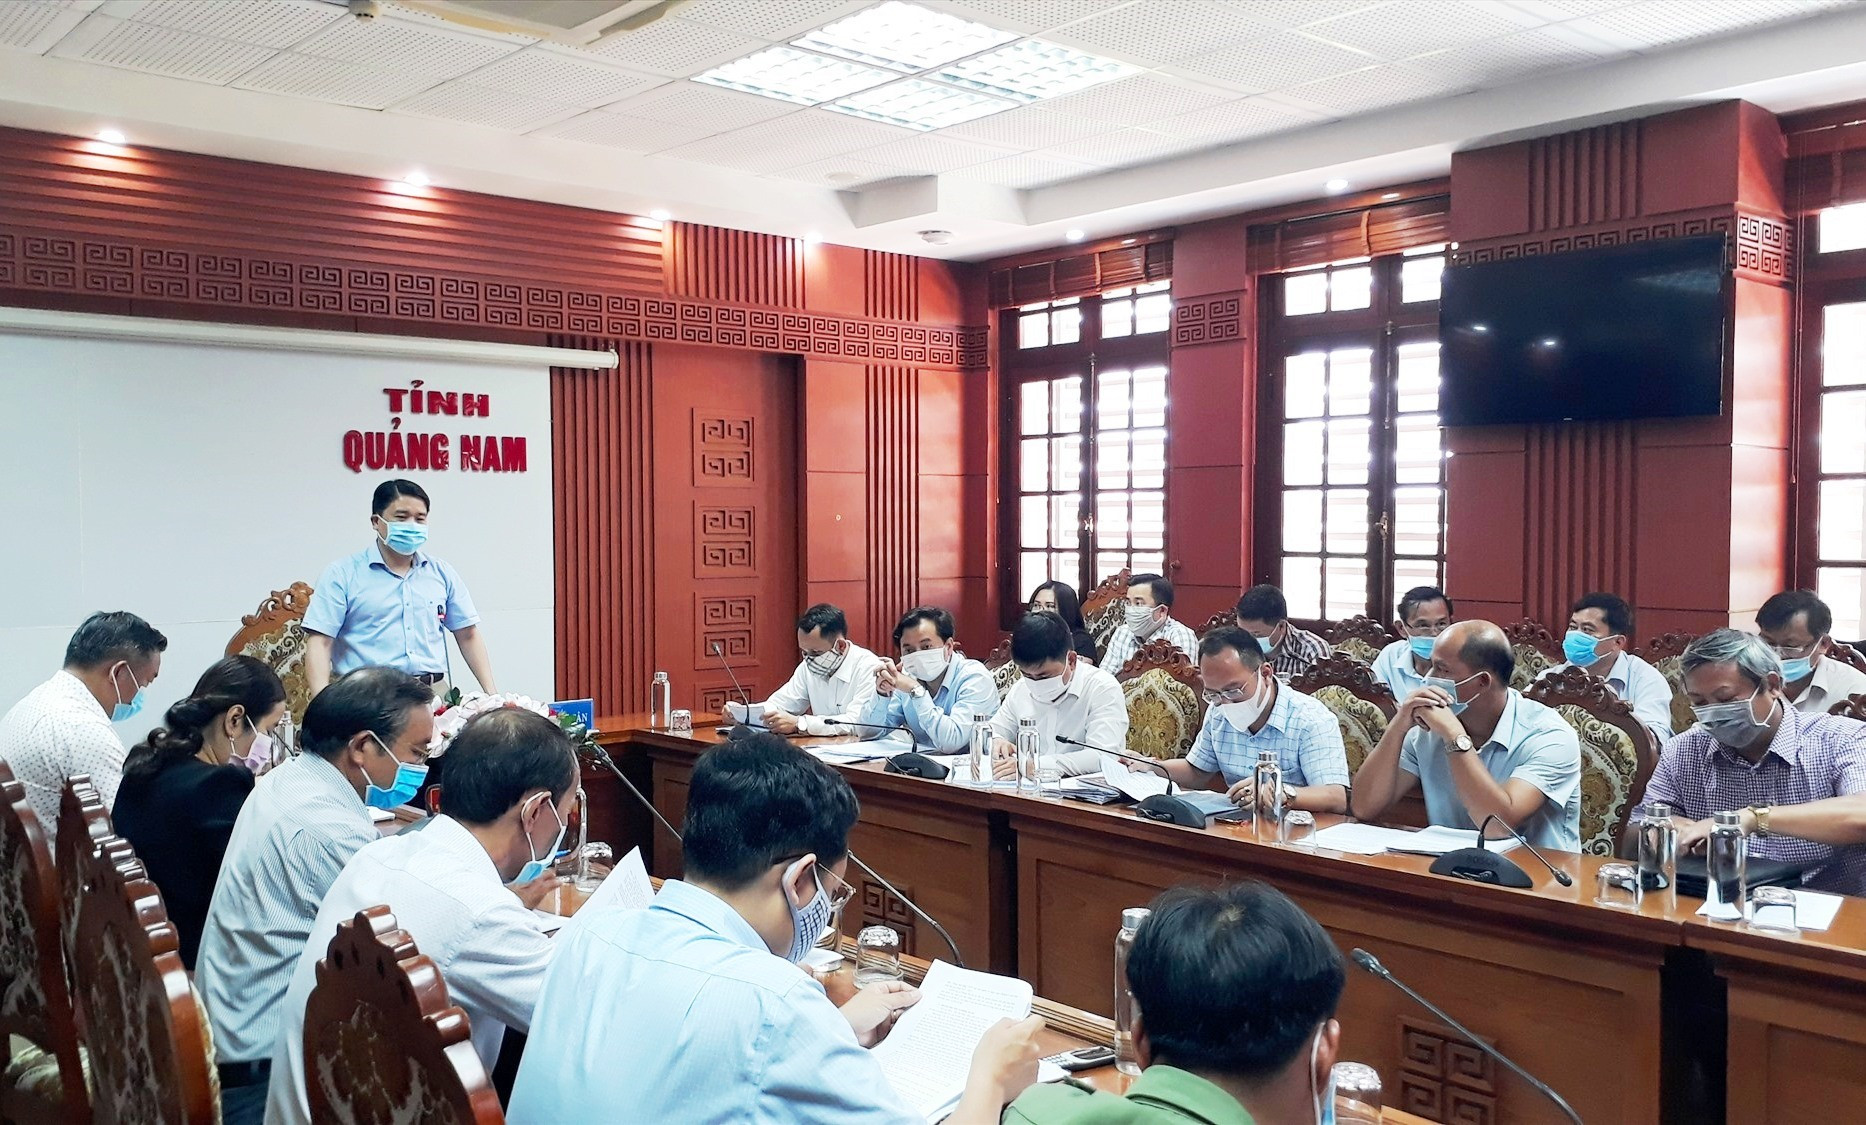 Phó Chủ tịch UBND tỉnh Trần Văn Tân đề nghị các sở, ngành và địa phương tập trung chuẩn bị để tổ chức hội thi và lễ hội thành công. Ảnh: T.V